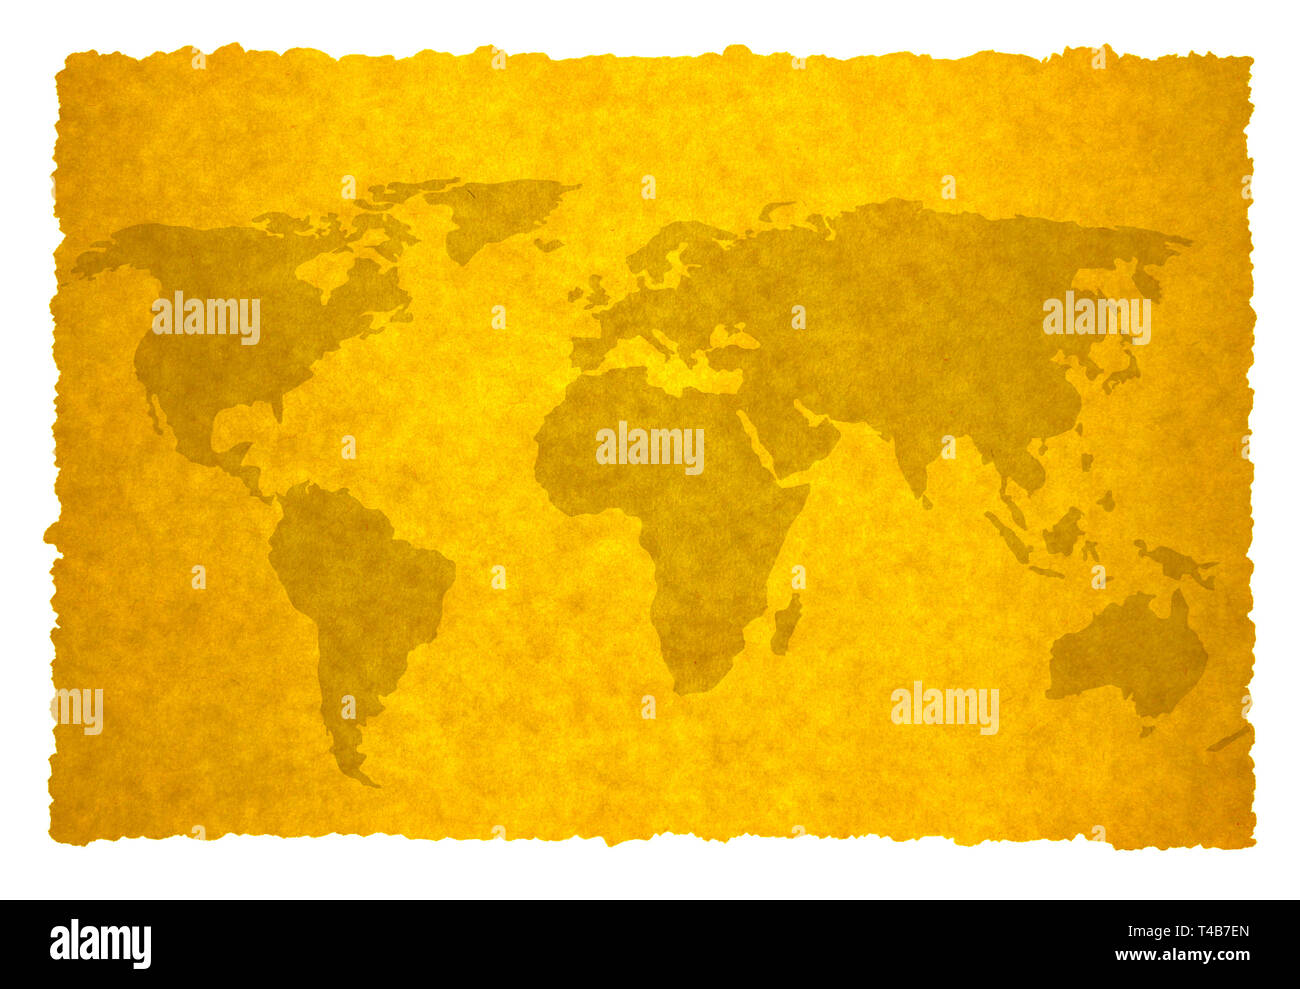 Ancienne carte du monde sur fond de papier parchemin. La carte utilisée pour tracer leur http://www.lib.utexas.edu/maps/world maps/world pol02.jpg auteur déclaration ici : htt Banque D'Images